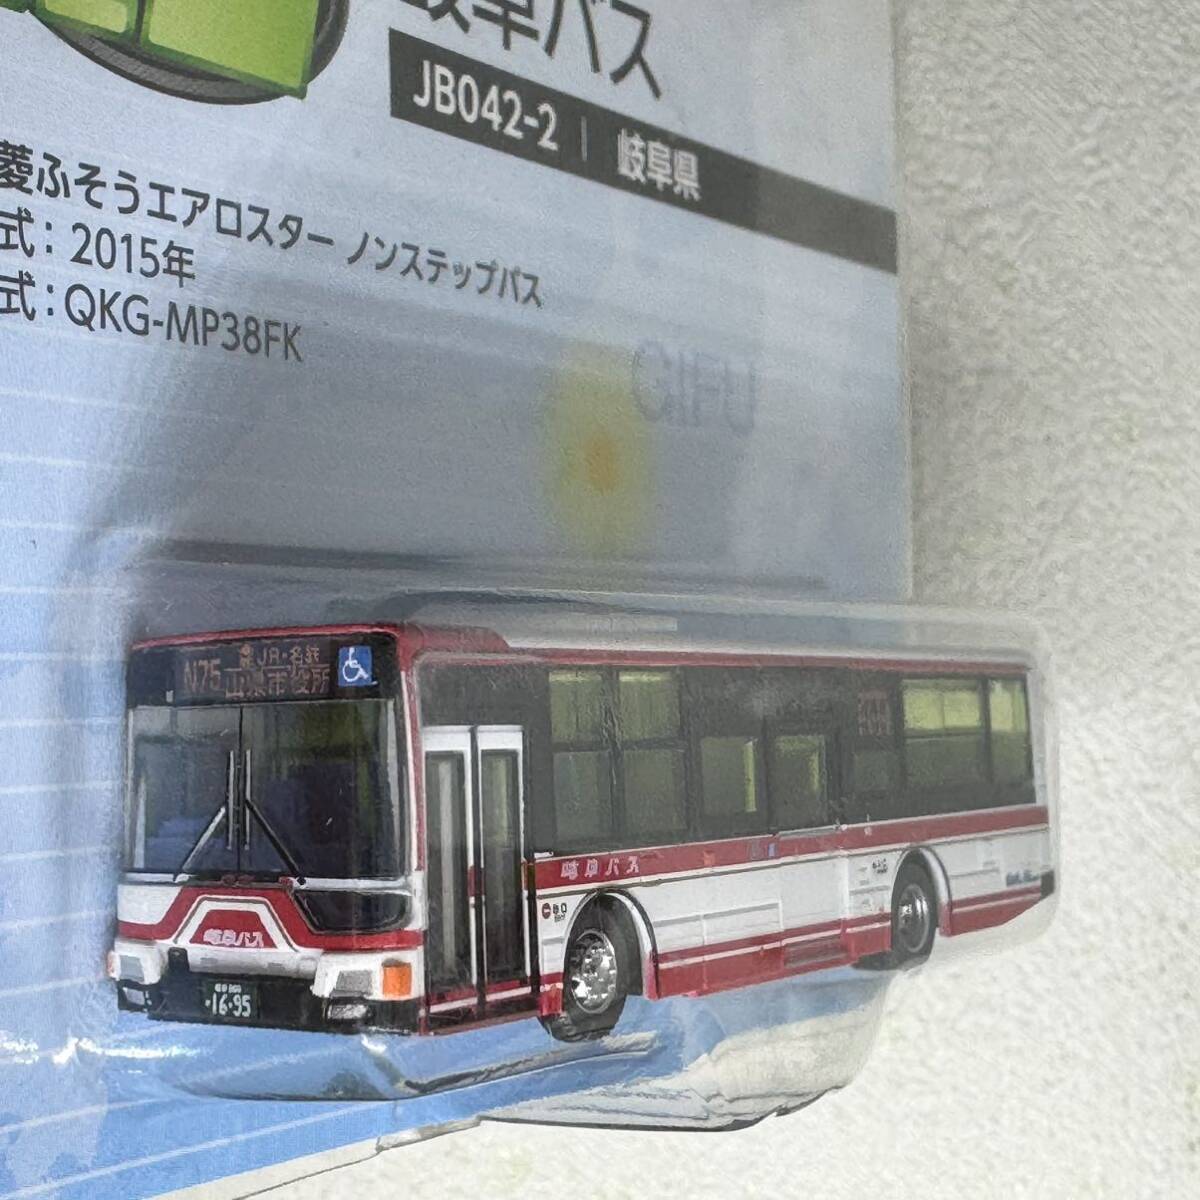 バスコレクション 全国バスコレ JB042-2 岐阜バス 三菱ふそう エアロスター_画像2